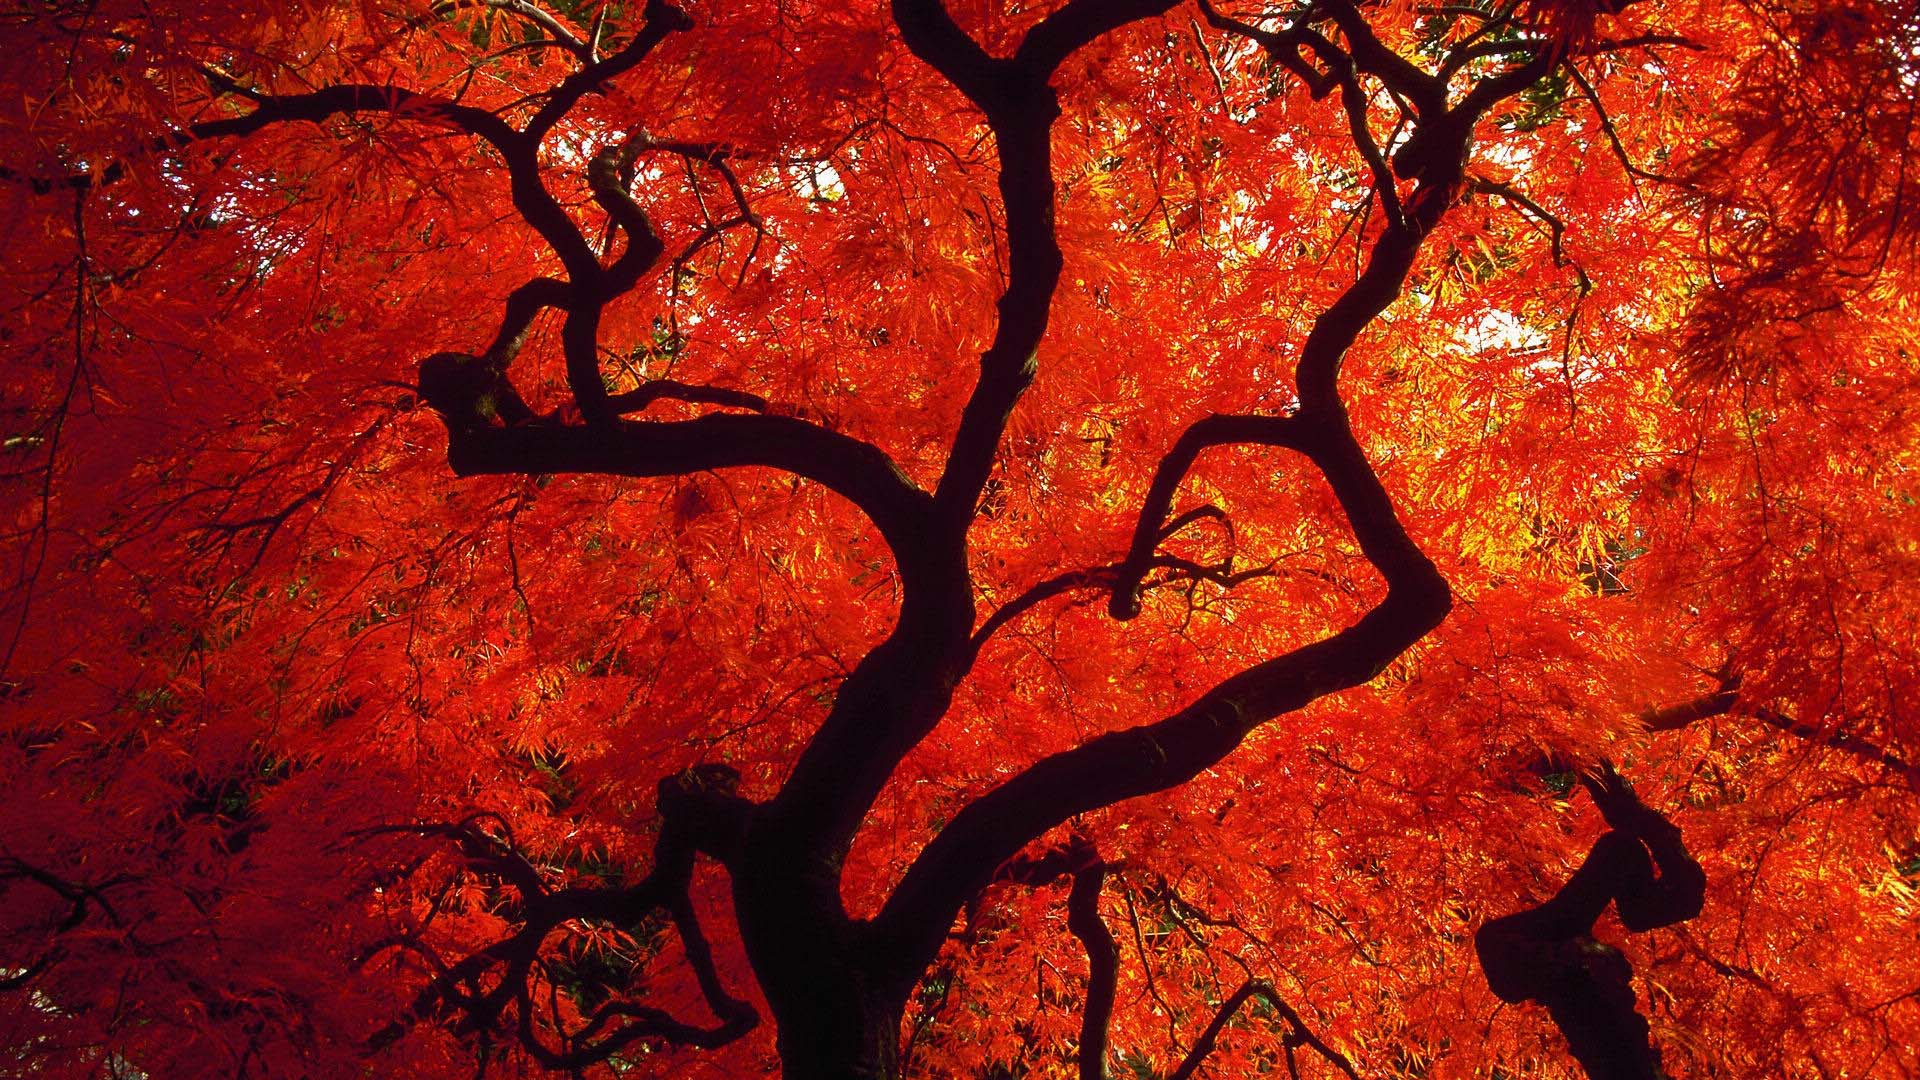 Cây đỏ mang đến cho chúng ta cảm giác ấm áp, mang một chút phong cách độc đáo cho không gian sống của chúng ta. Hãy xem hình ảnh để chiêm ngưỡng sức hút của cây đỏ này.